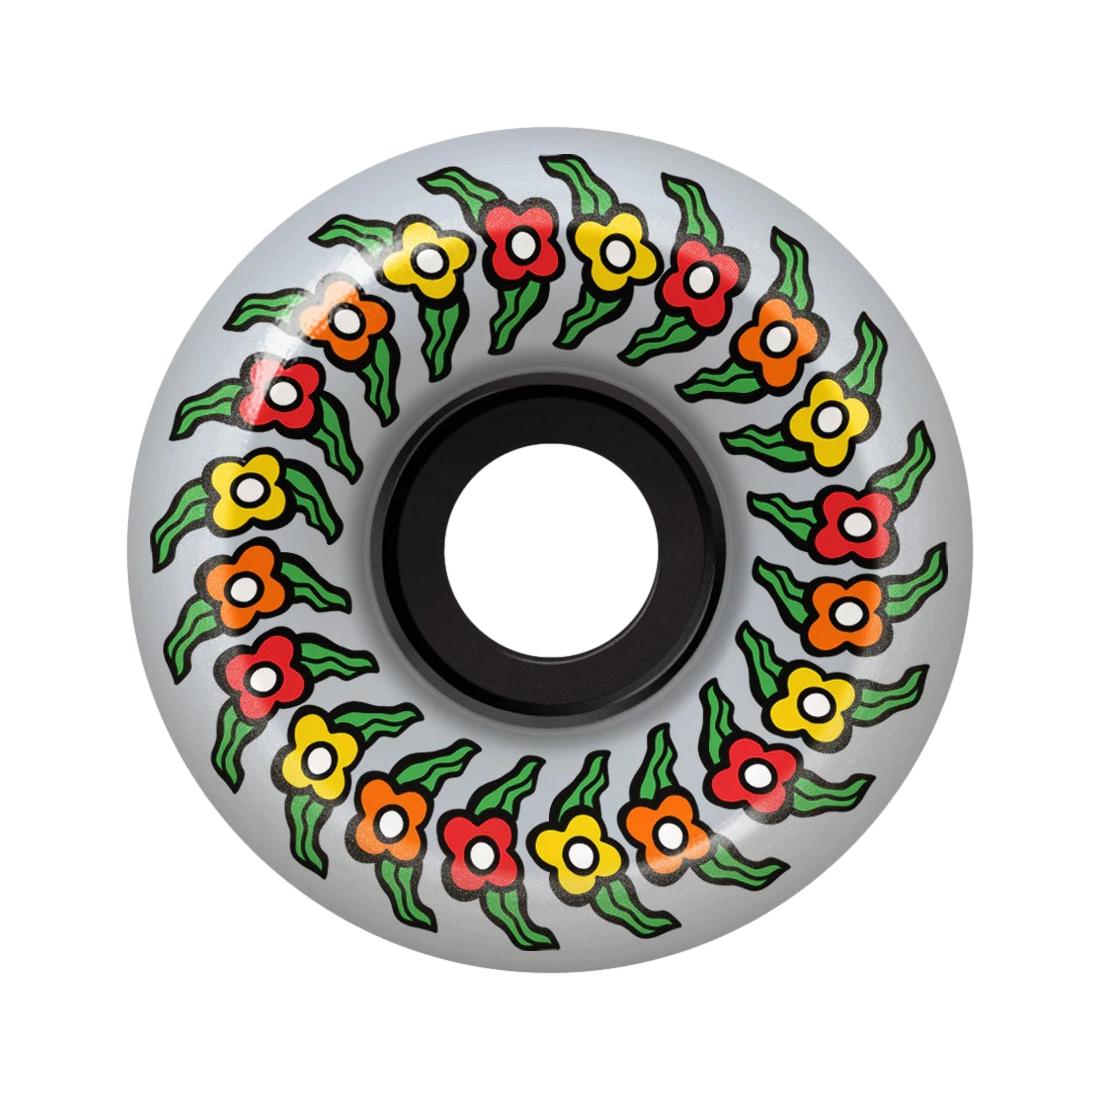 SF 80HD Gonz Flowers 54mm Wheels - Venue Skateboards